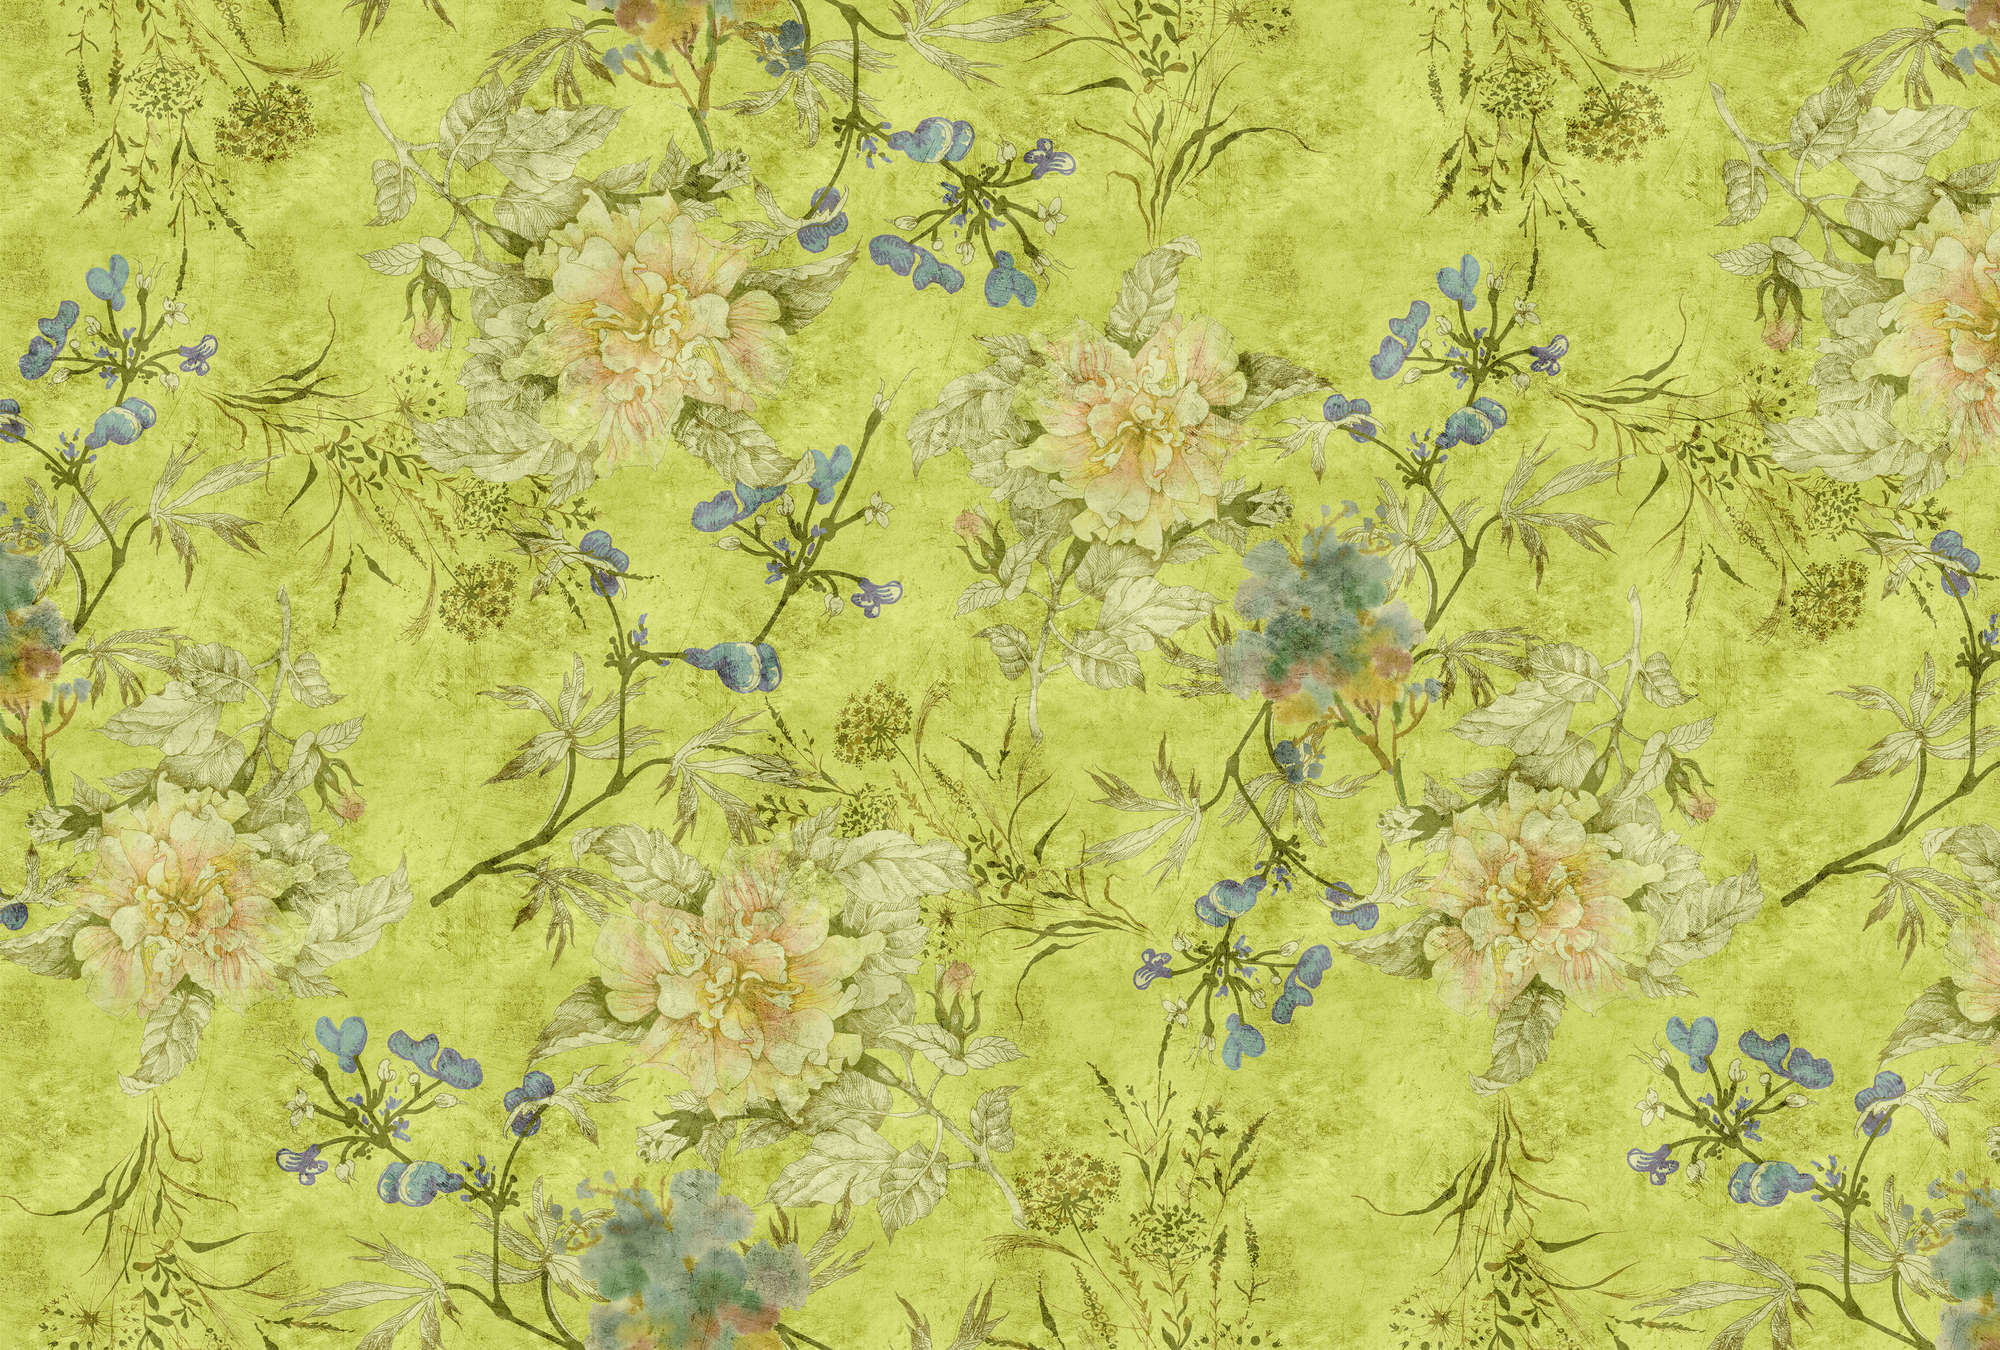             Tenderblossom 1 - Papel pintado fotográfico con zarcillos de flores modernas en una estructura rayada - Verde | Tela no tejida lisa de alta calidad
        